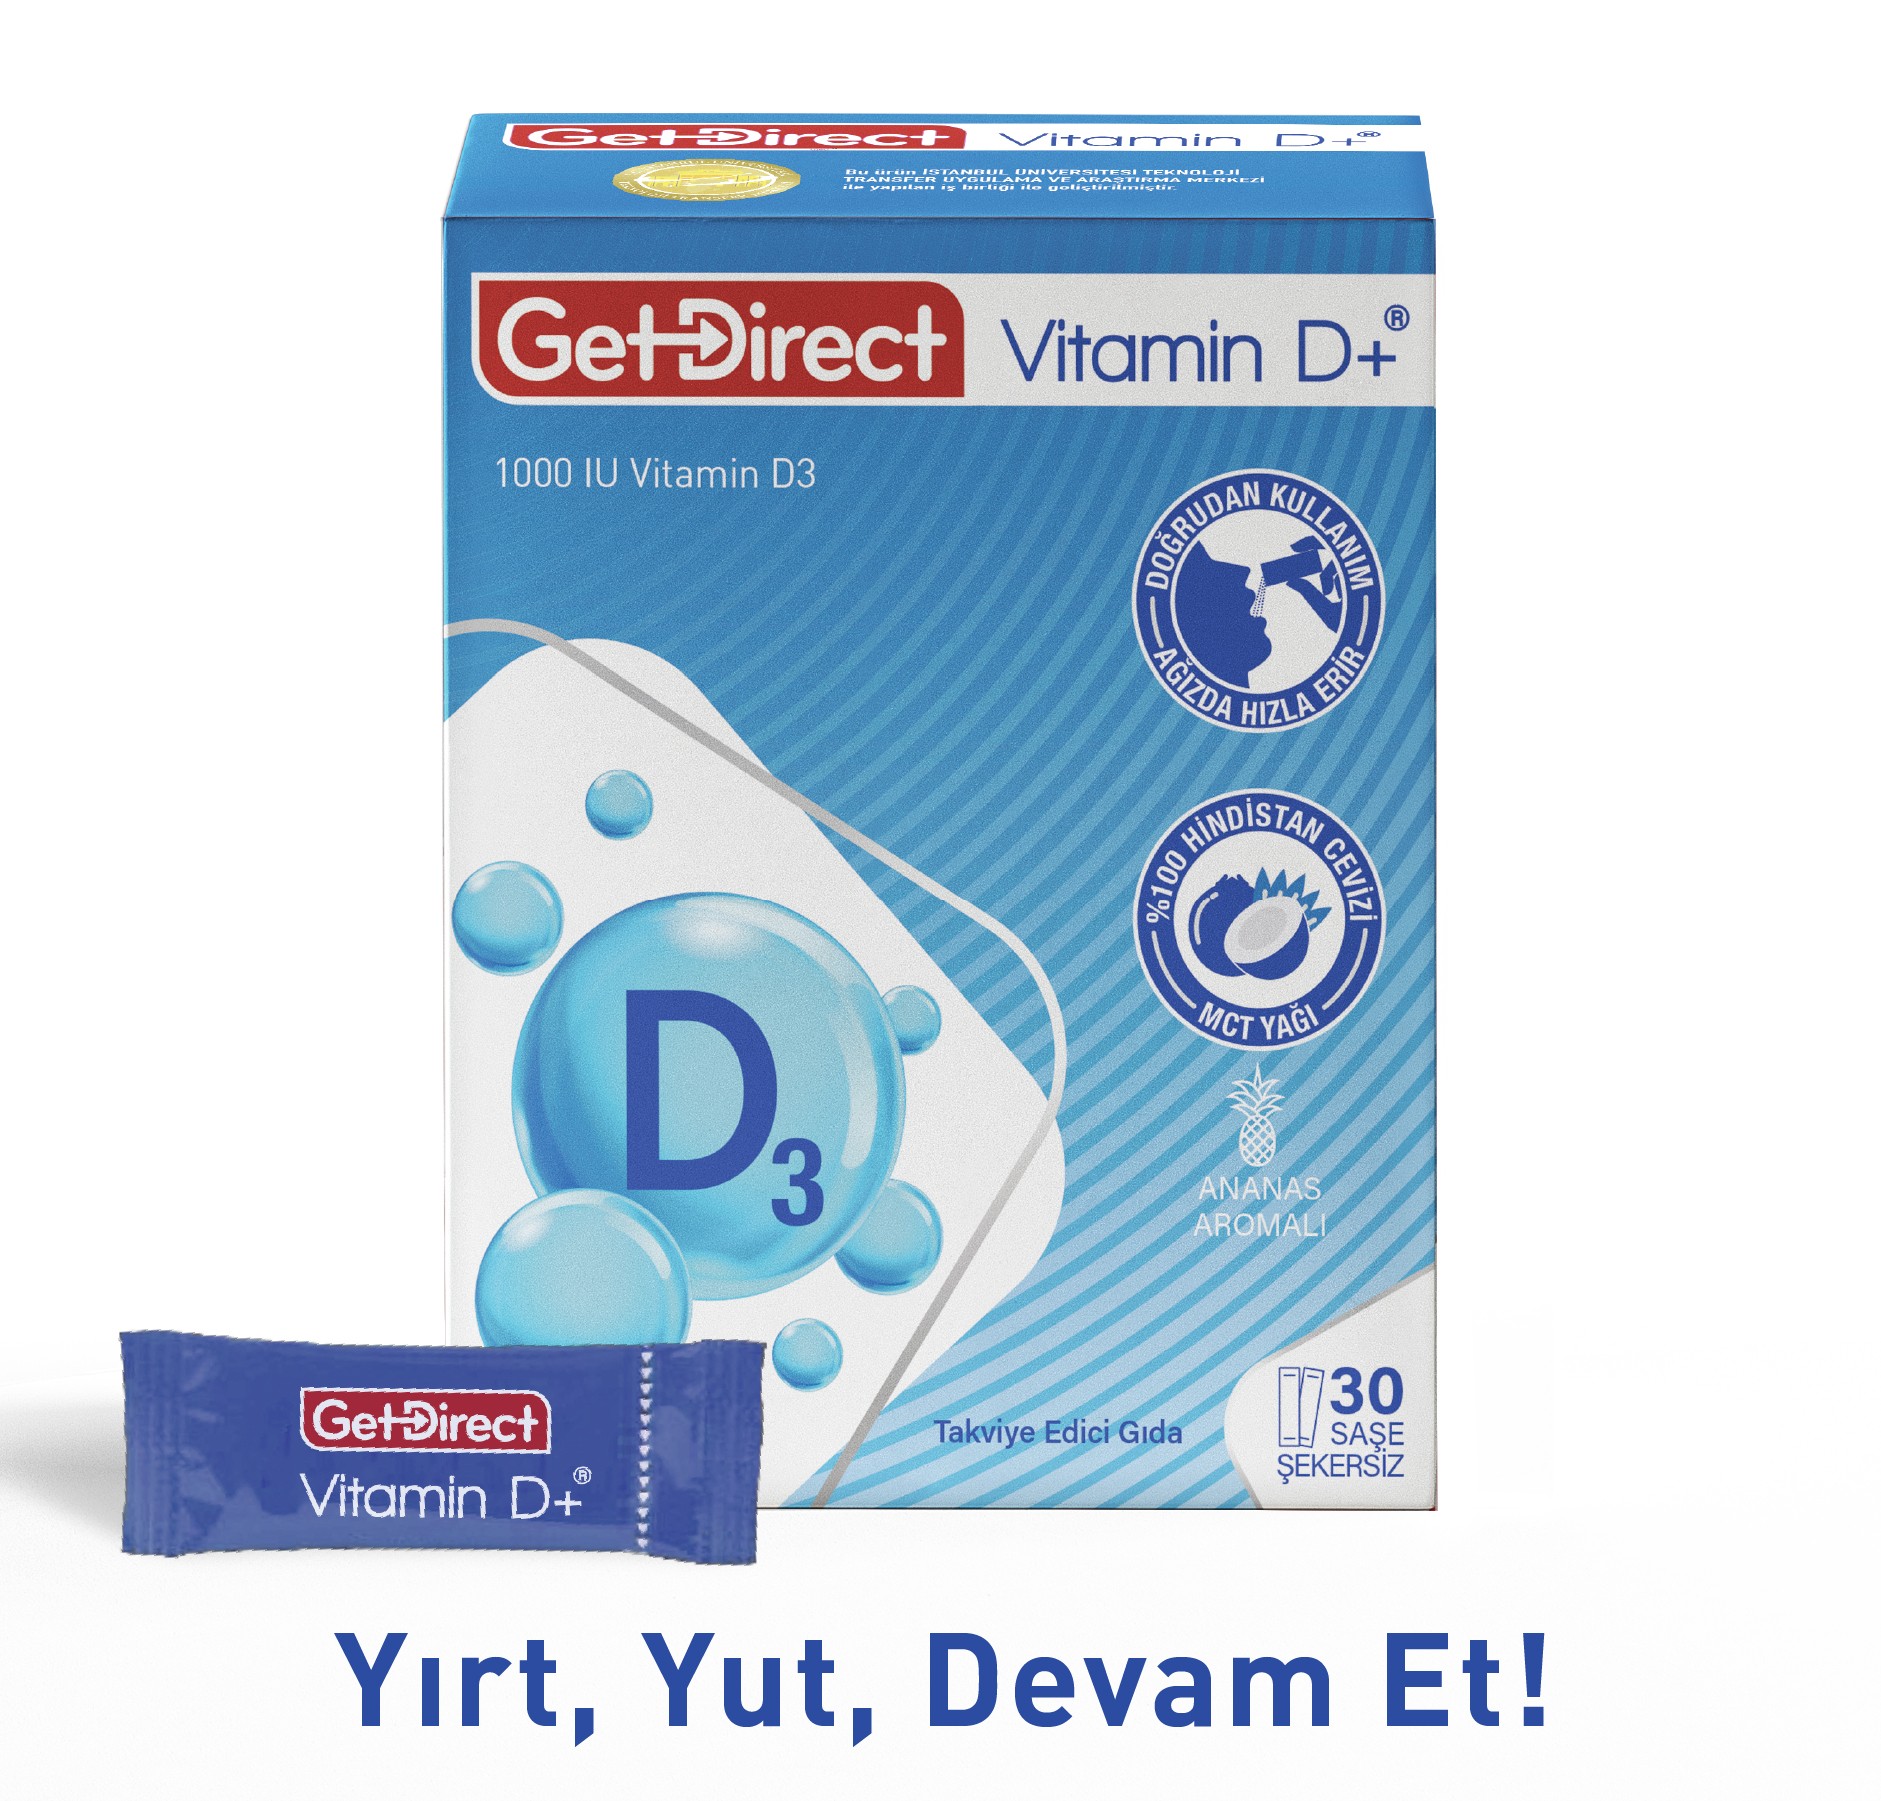 GetDirect Vitamin D+ 1000 IU Vitamin D3  İçeren Takviye Edici Gıda 30 saşe